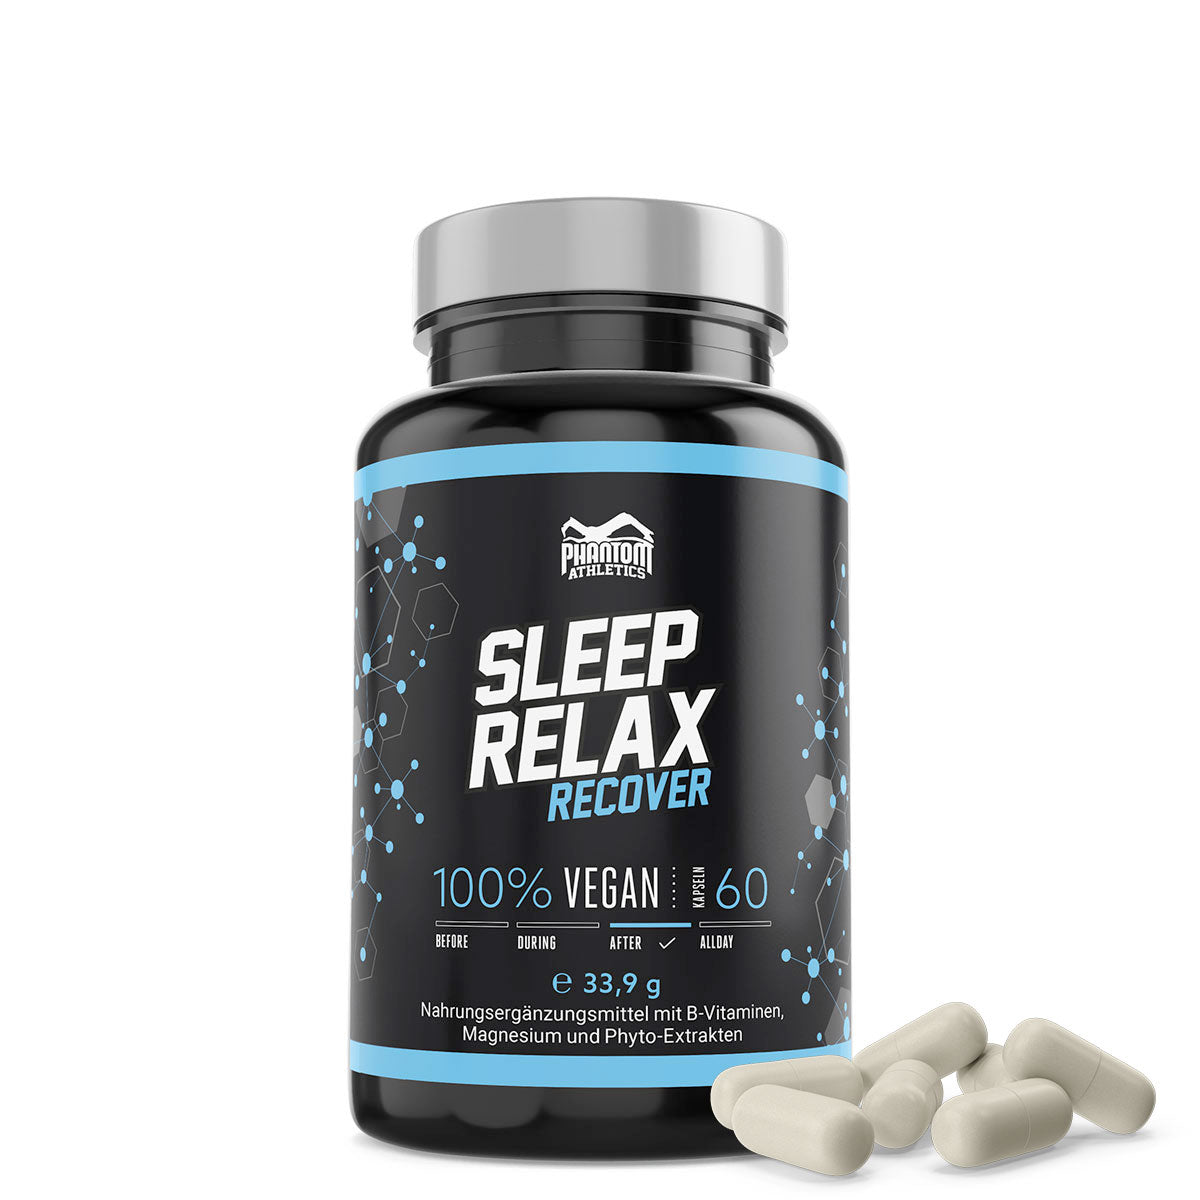 Das Phantom Sleep and Relax Supplement für eine bessere Regeneration im Kampfsport.